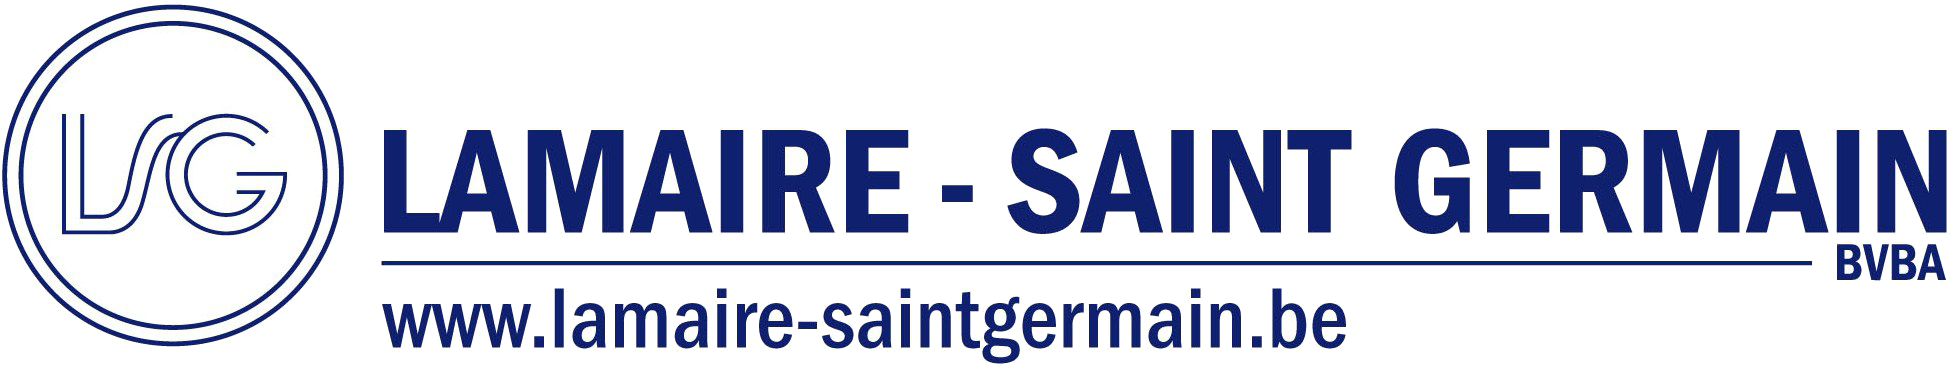 Lamaire - Saint Germain logo